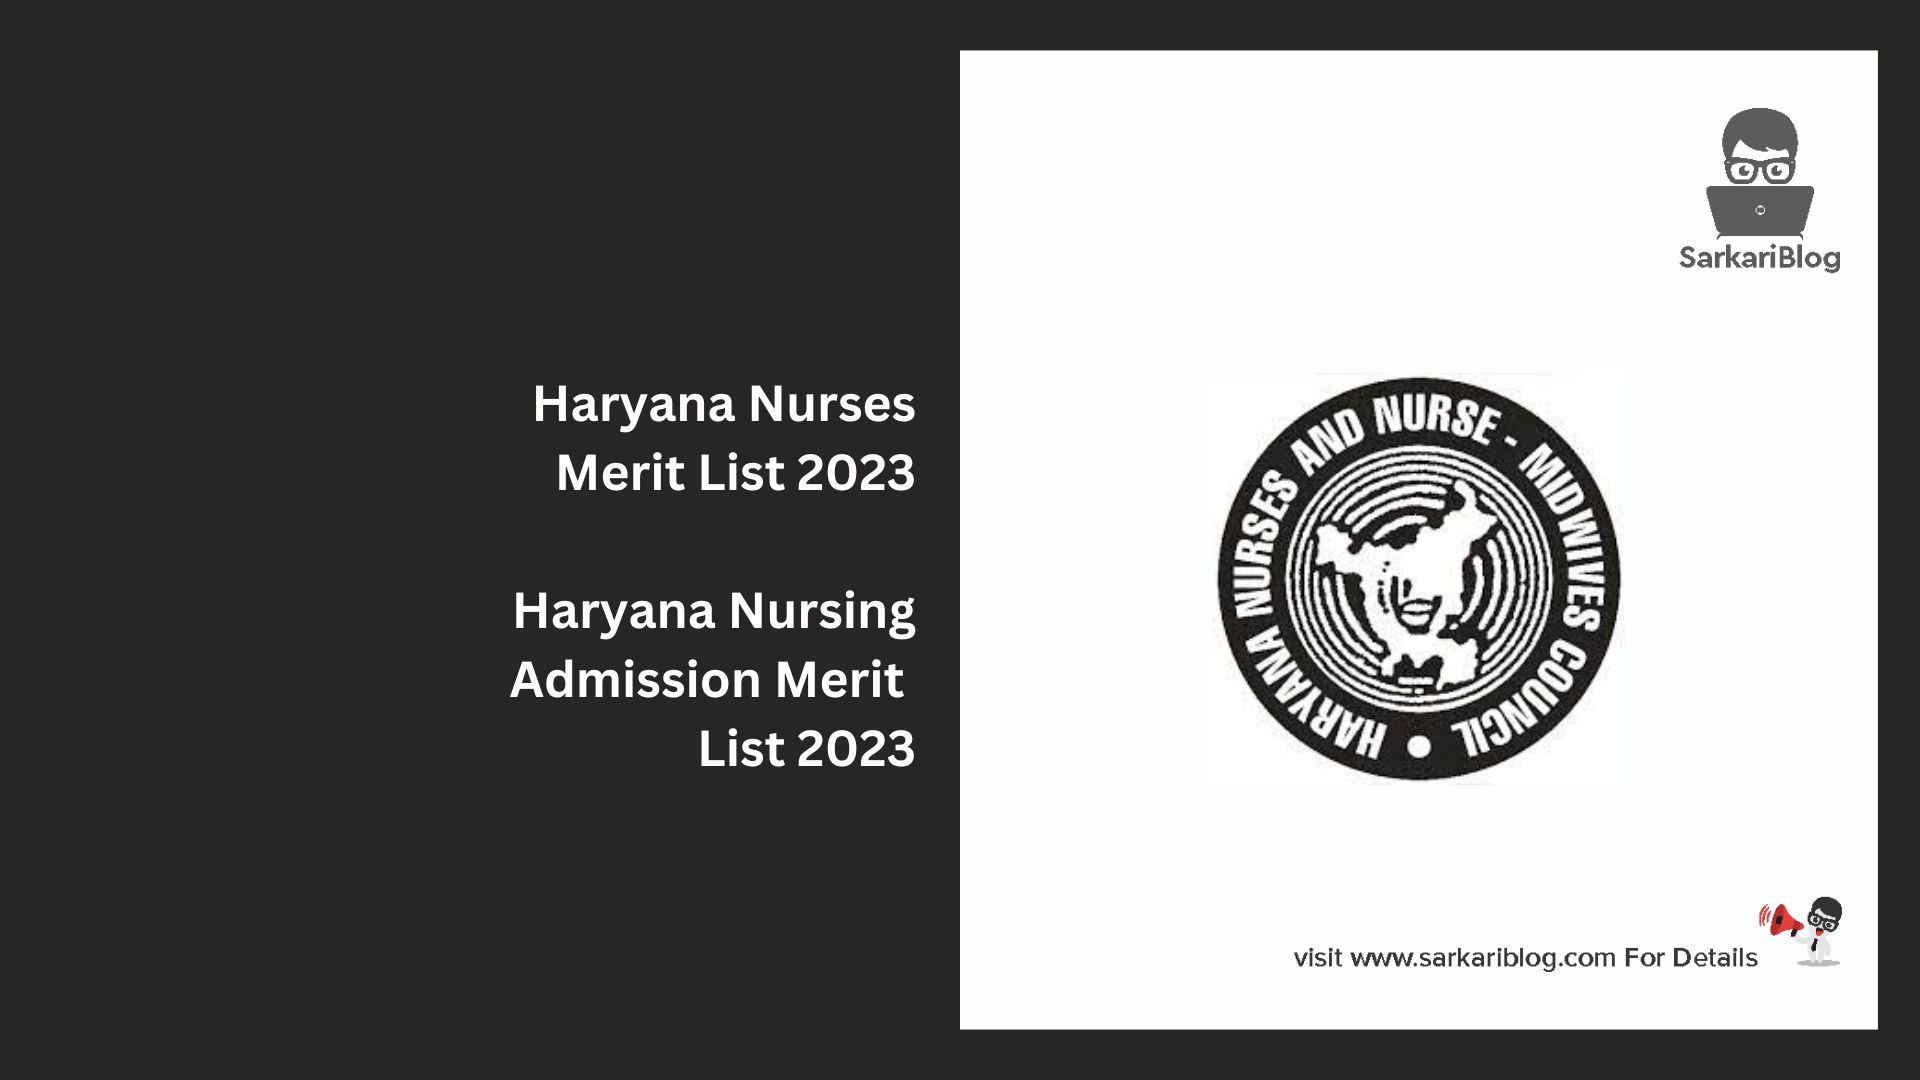 Haryana Nurses Merit List 2023